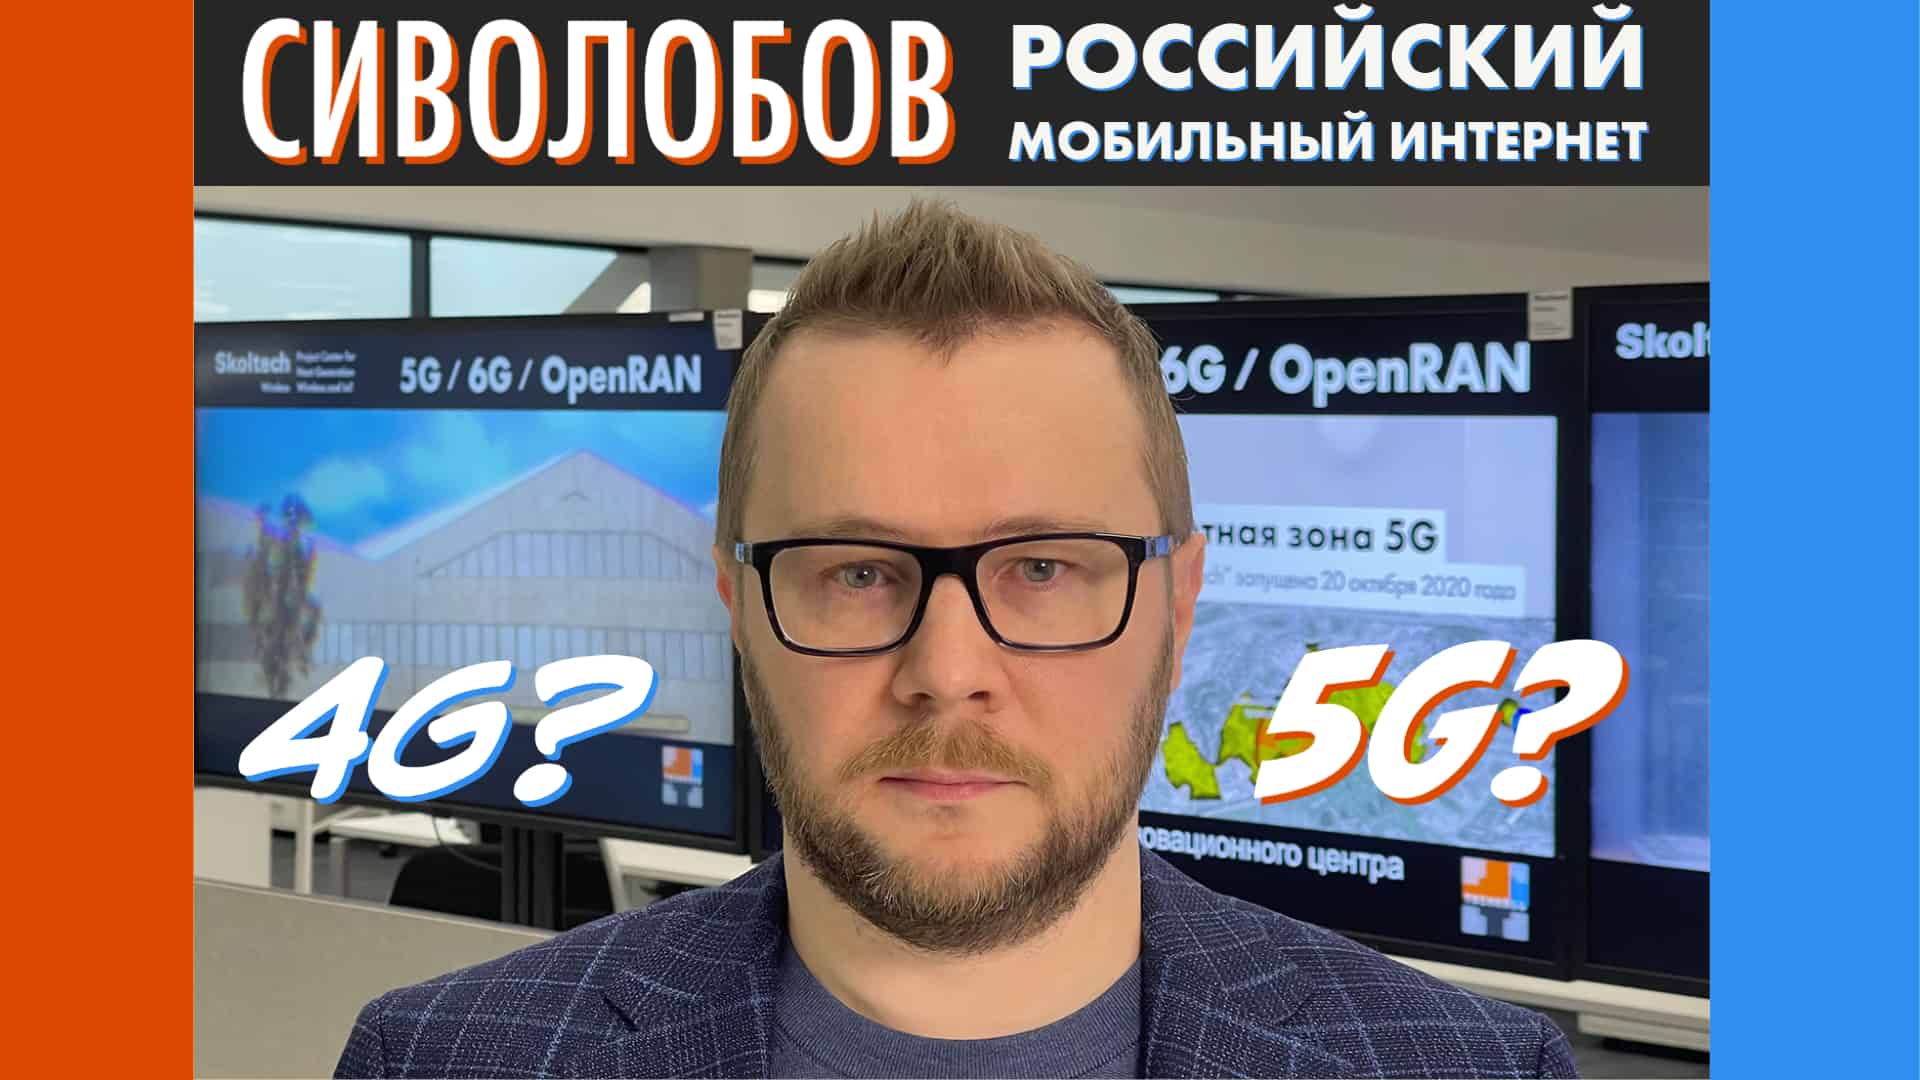 Александр Сиволобов про российский мобильный интернет: что важнее — 4G или 5G?